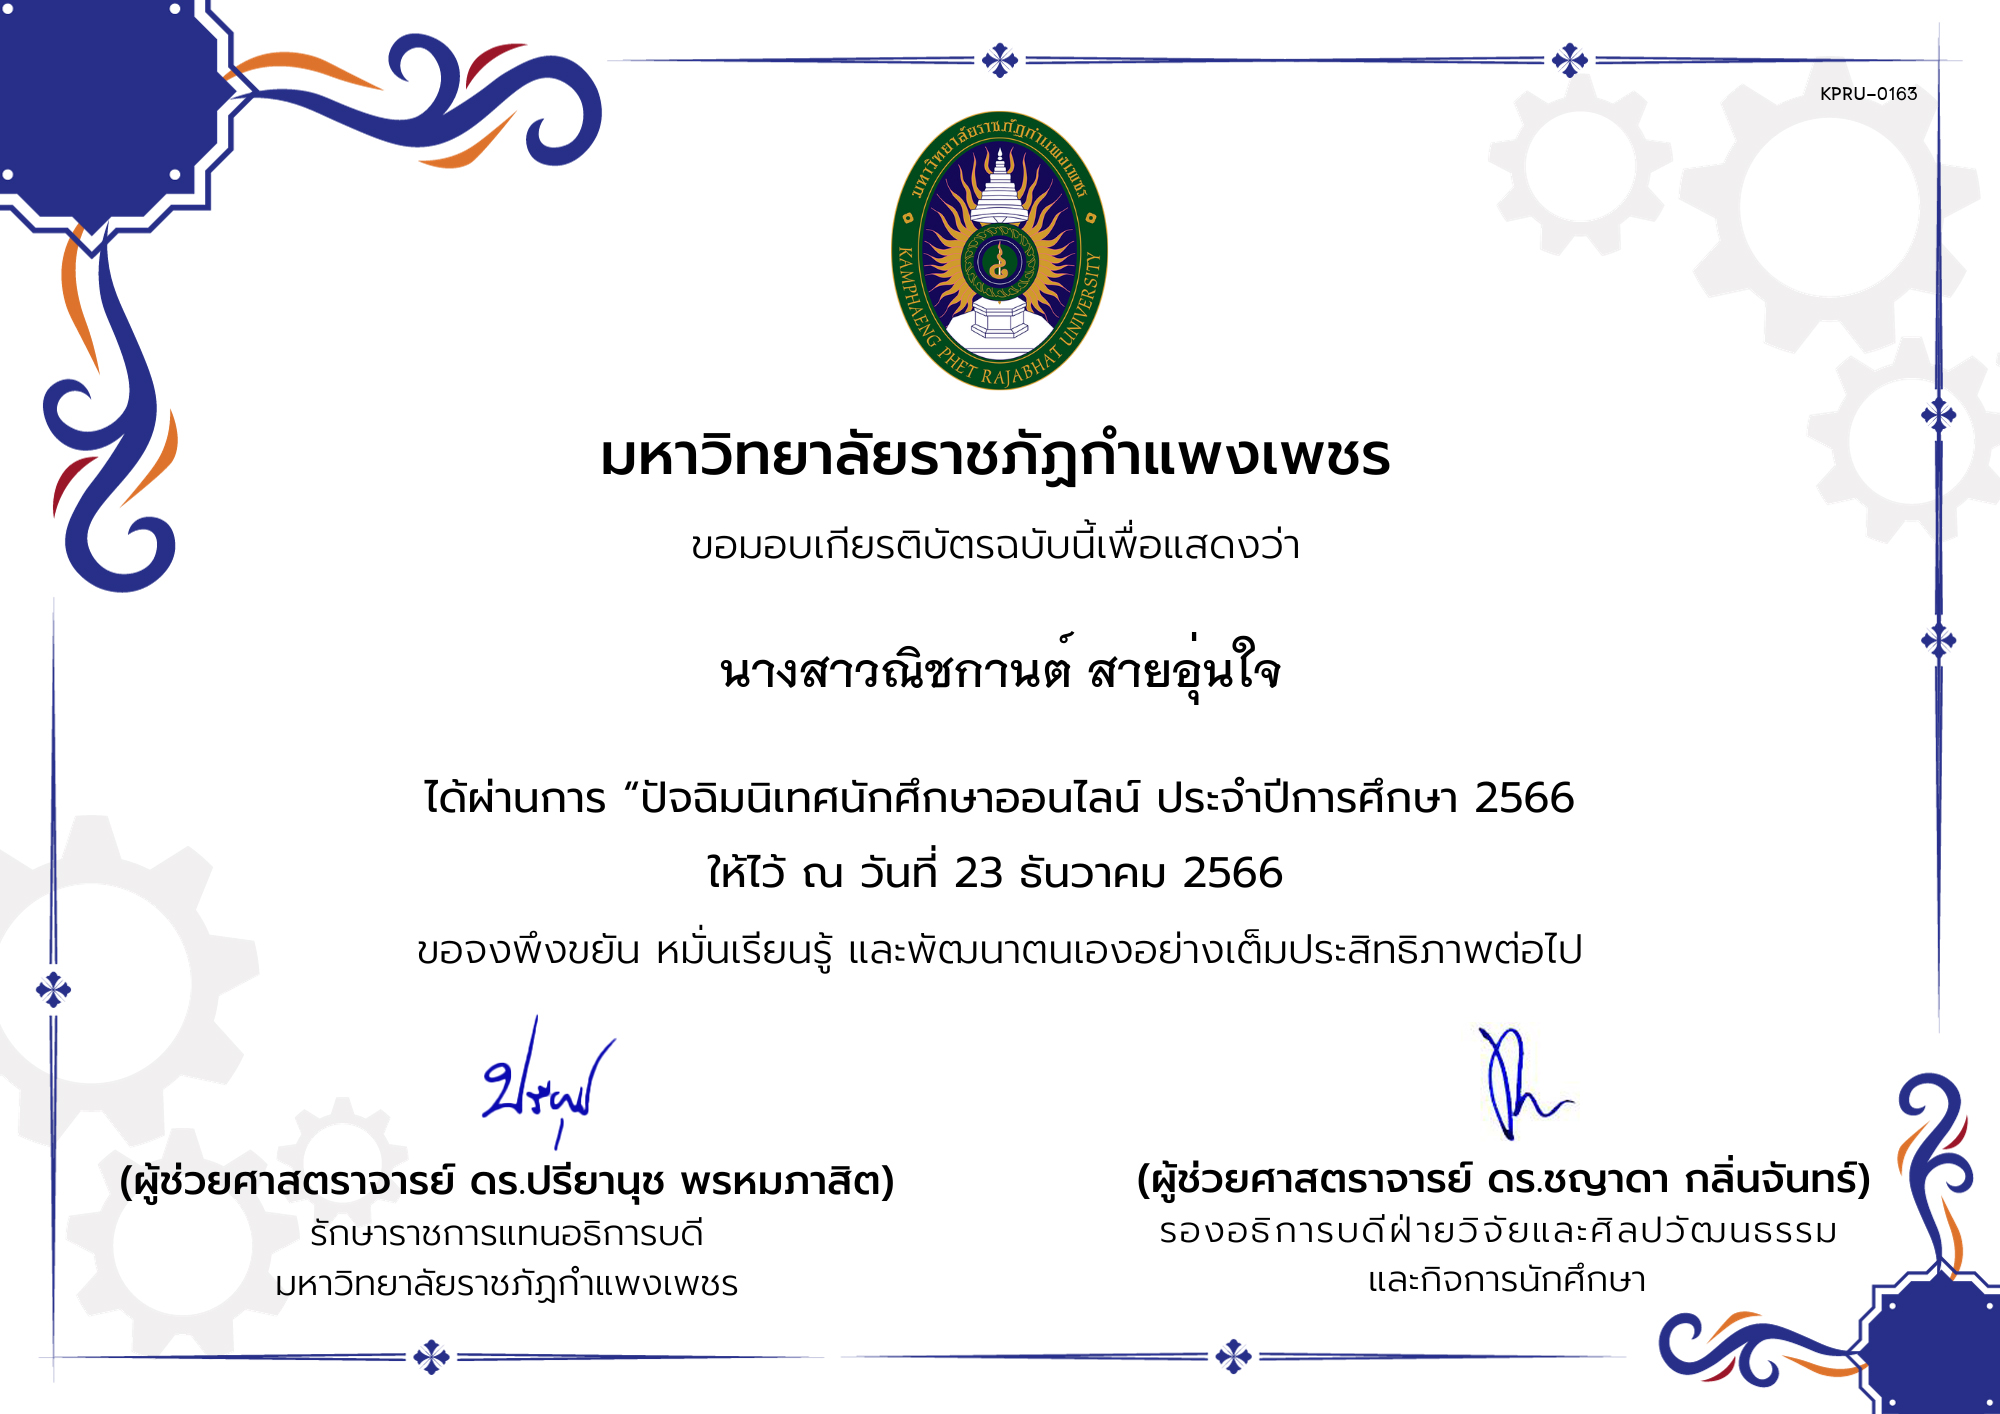 เกียรติบัตร กิจกรรมปัจฉิมนิเทศนักศึกษาออนไลน์ ประจำปีการศึกษา 2566 ของ นางสาวณิชกานต์ สายอุ่นใจ